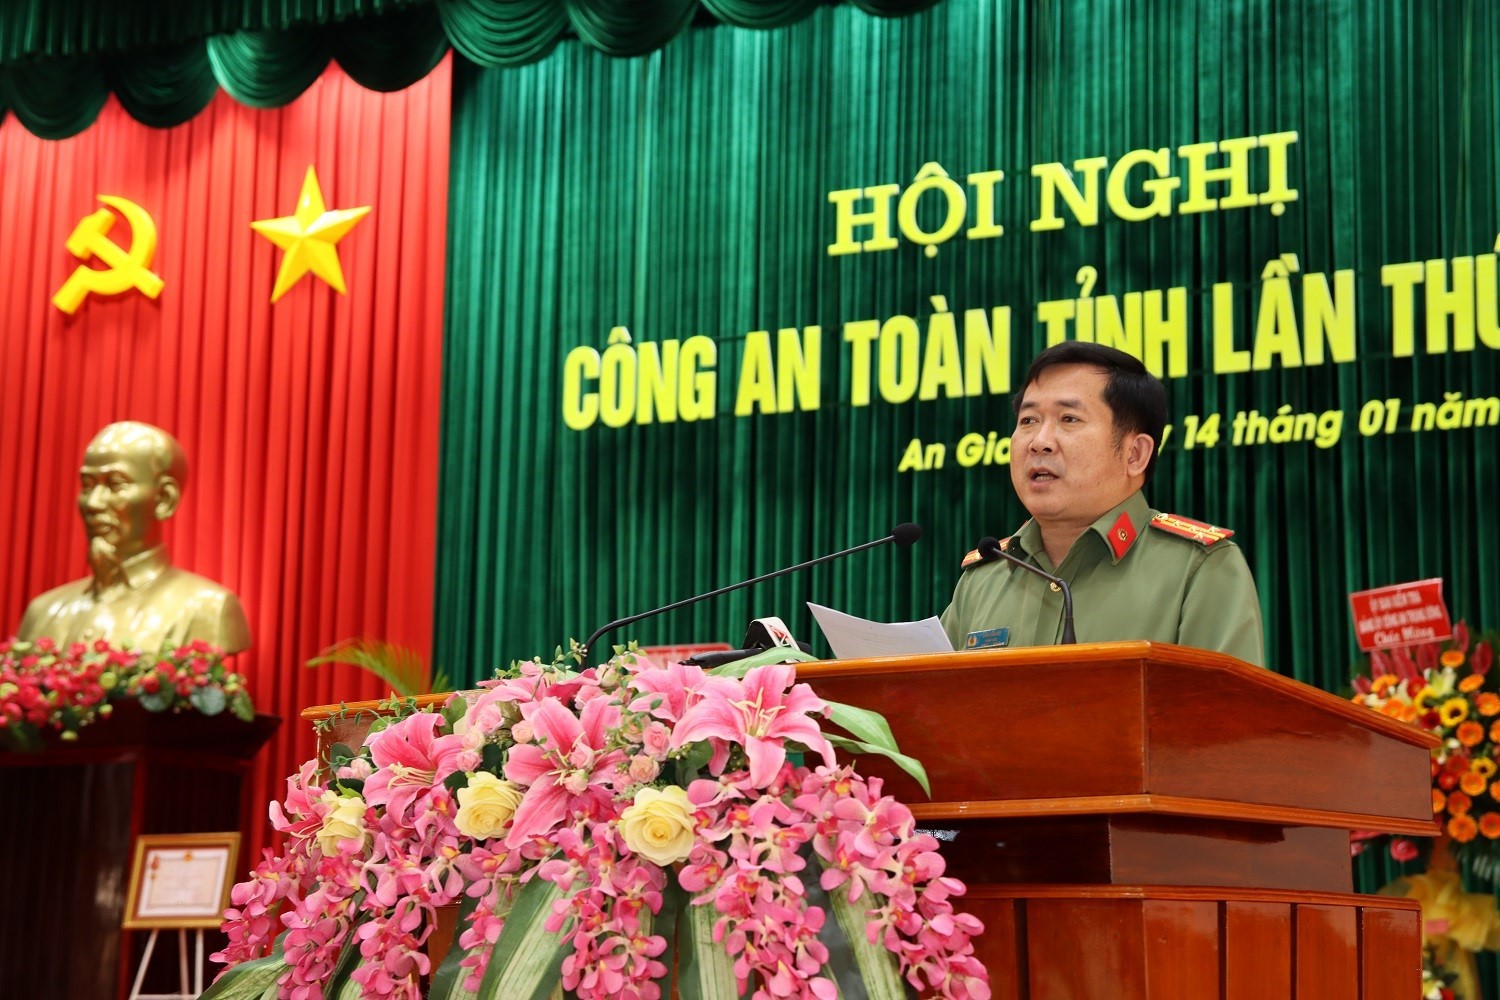 Đại tá Đinh Văn Nơi tiếp tục điều hành Công an tỉnh An Giang - Ảnh 1.